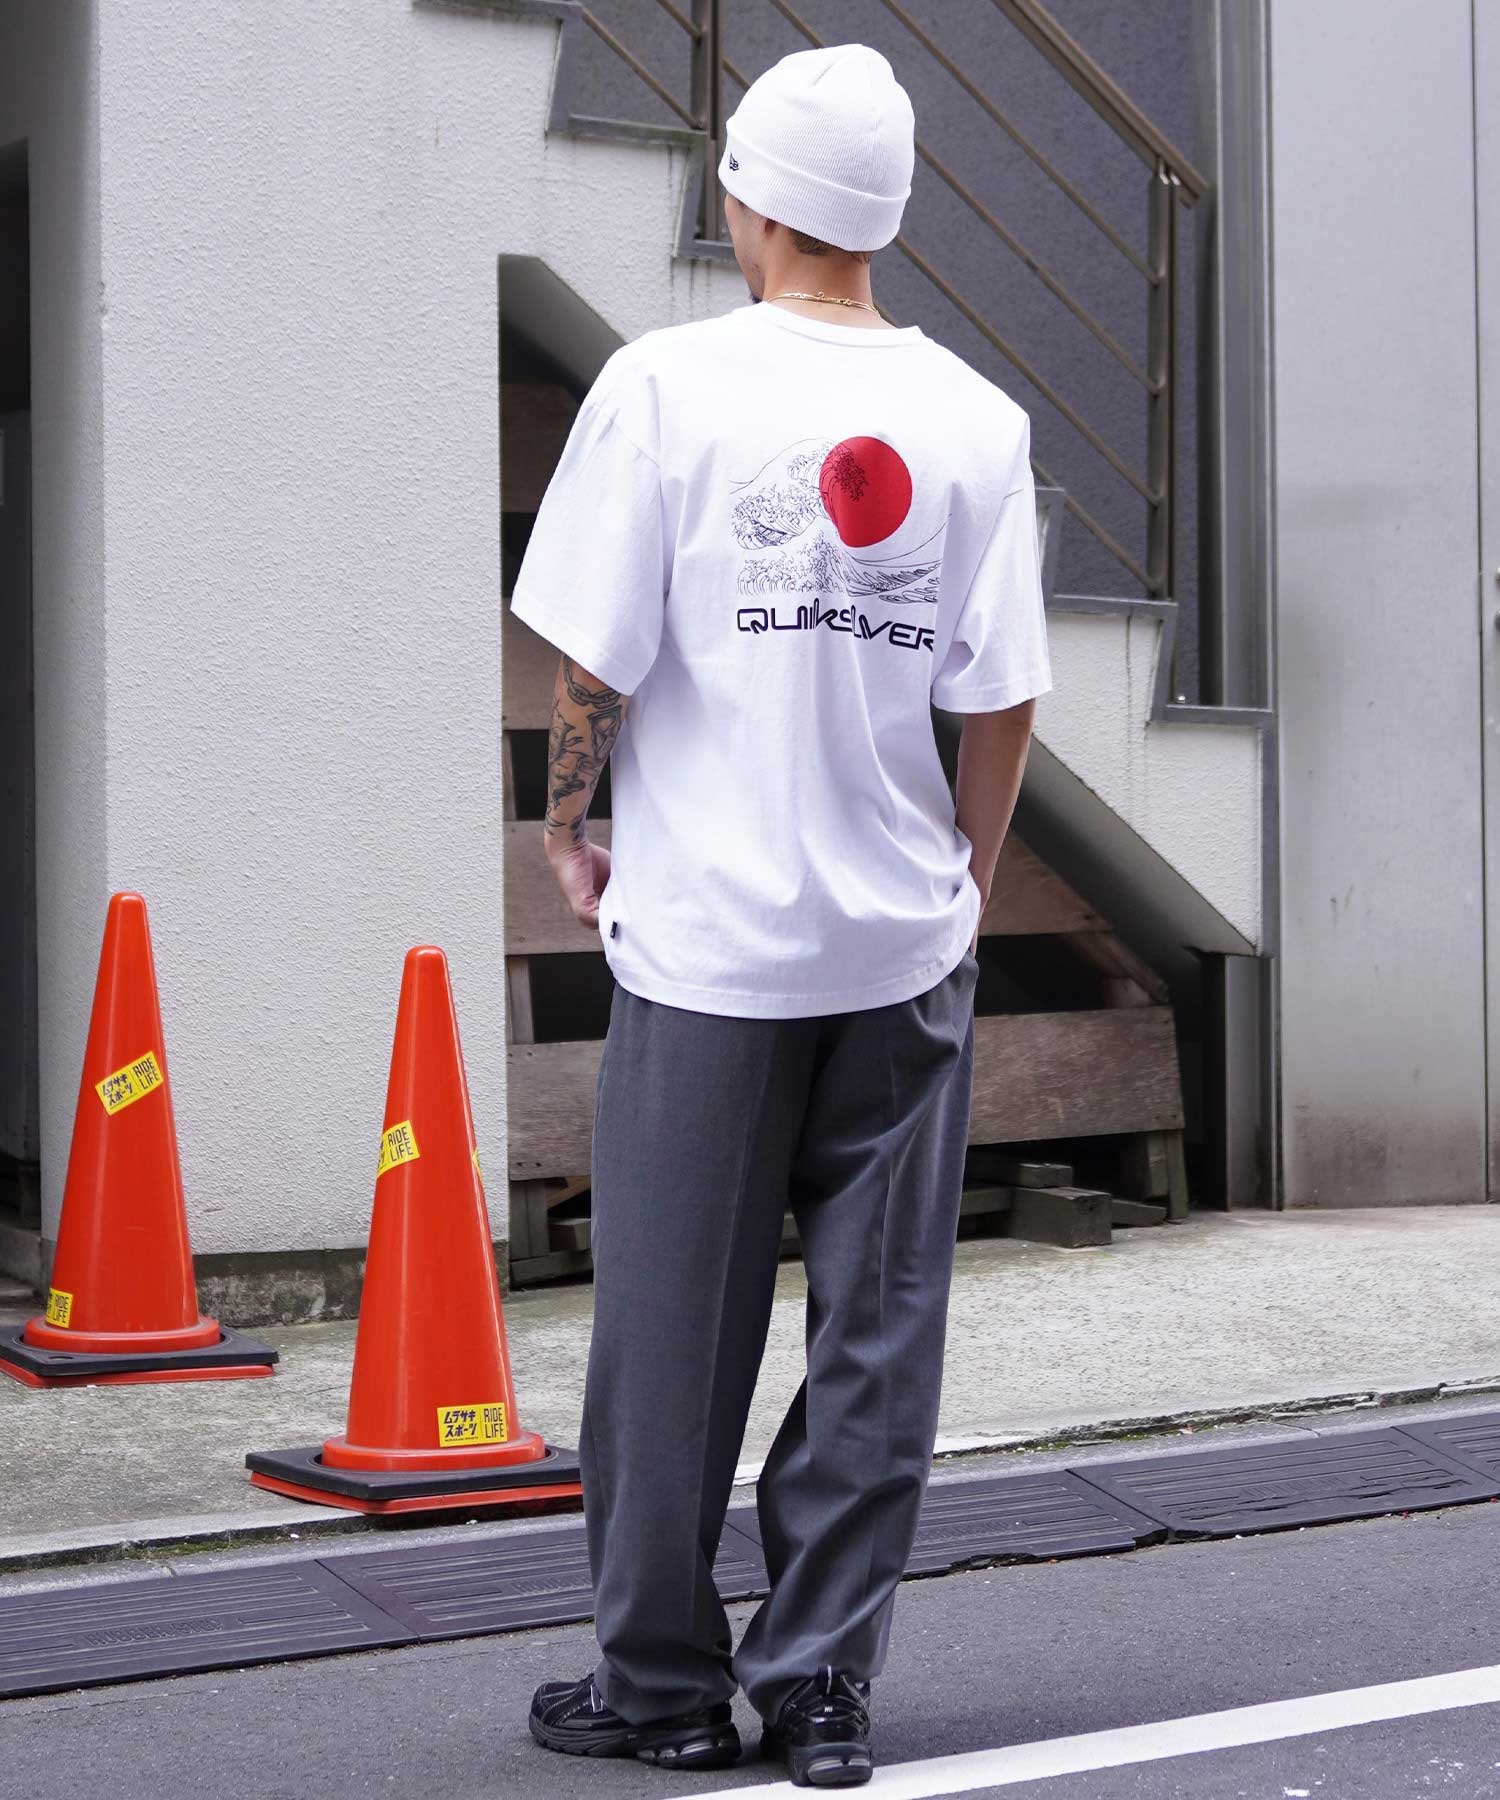 【クーポン対象】【ムラサキスポーツ限定】 QUIKSILVER クイックシルバー メンズ 半袖 Tシャツ オーバーサイズ バックプリント JAPAN QST245624M(WHT-M)